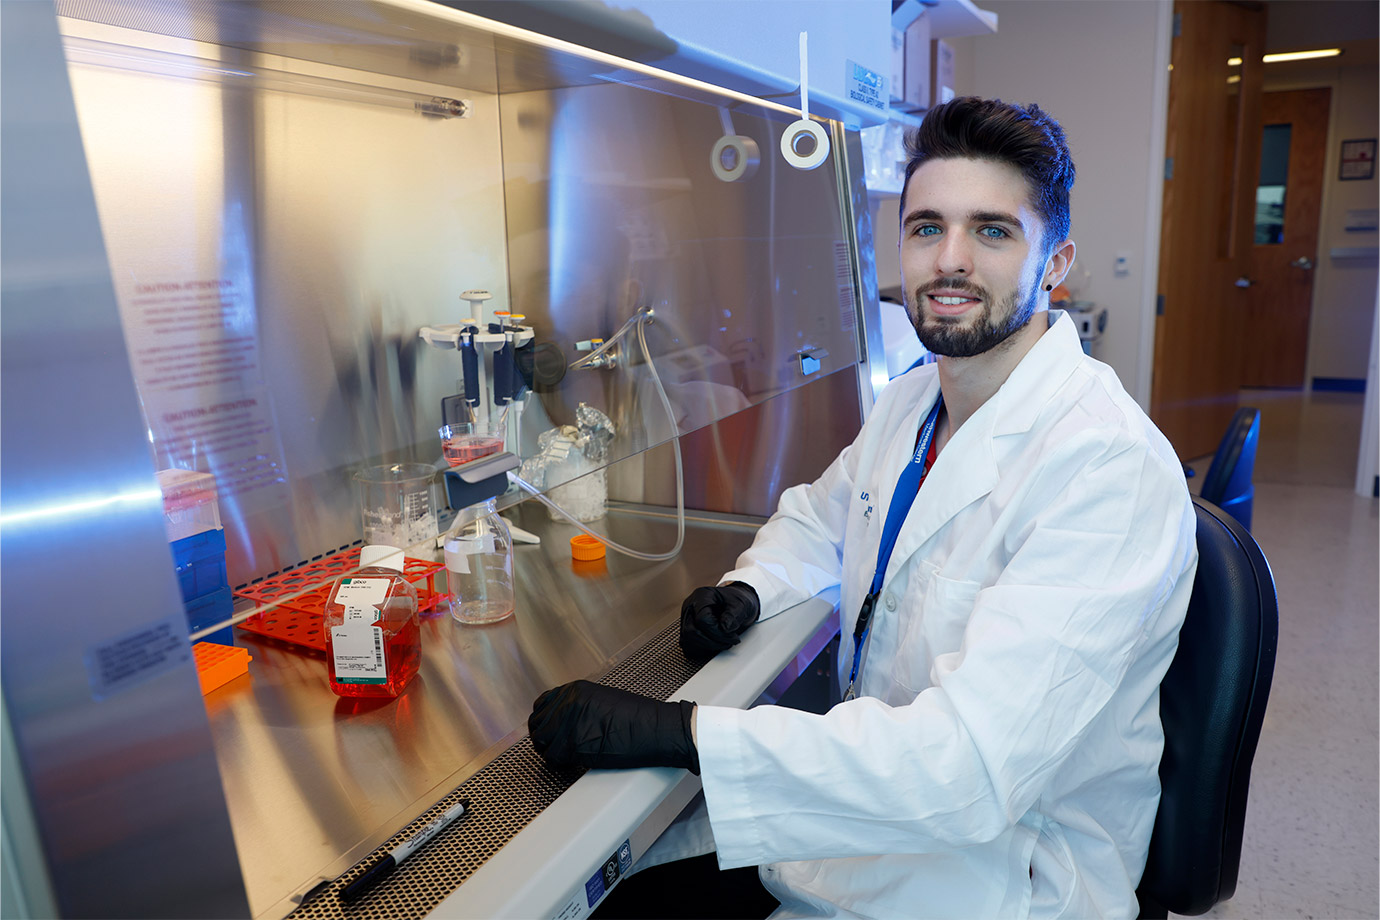 man at desk wearing white lab coat